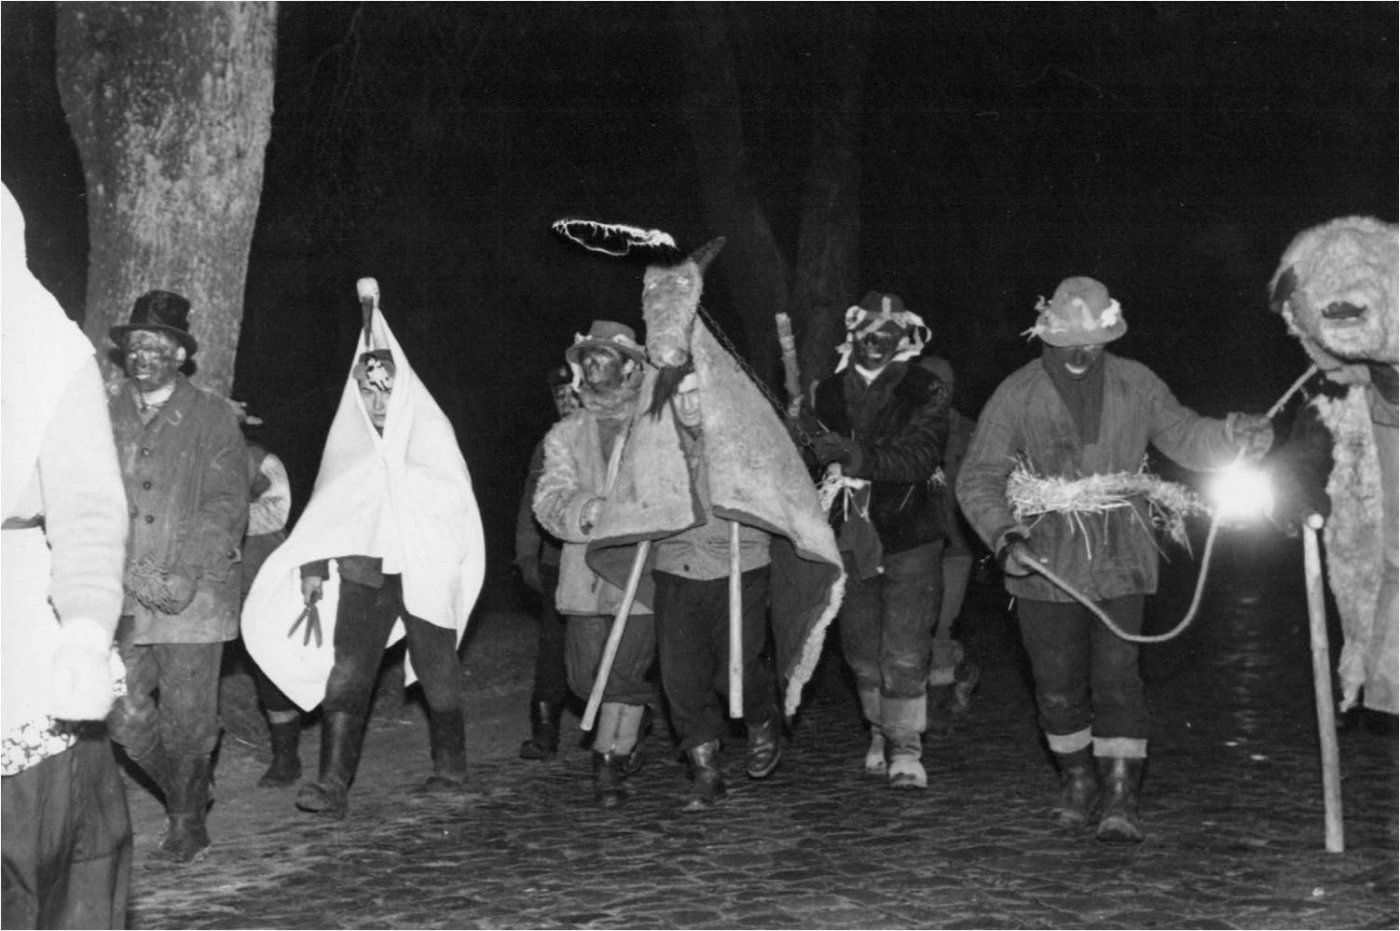 Gwiozdci noworoczni w pochodzie przez wieś, Przetoczyno, 1968, fot. Z. Kosycarz, ze zbiorów Muzeum Narodowego w Gdańsku.